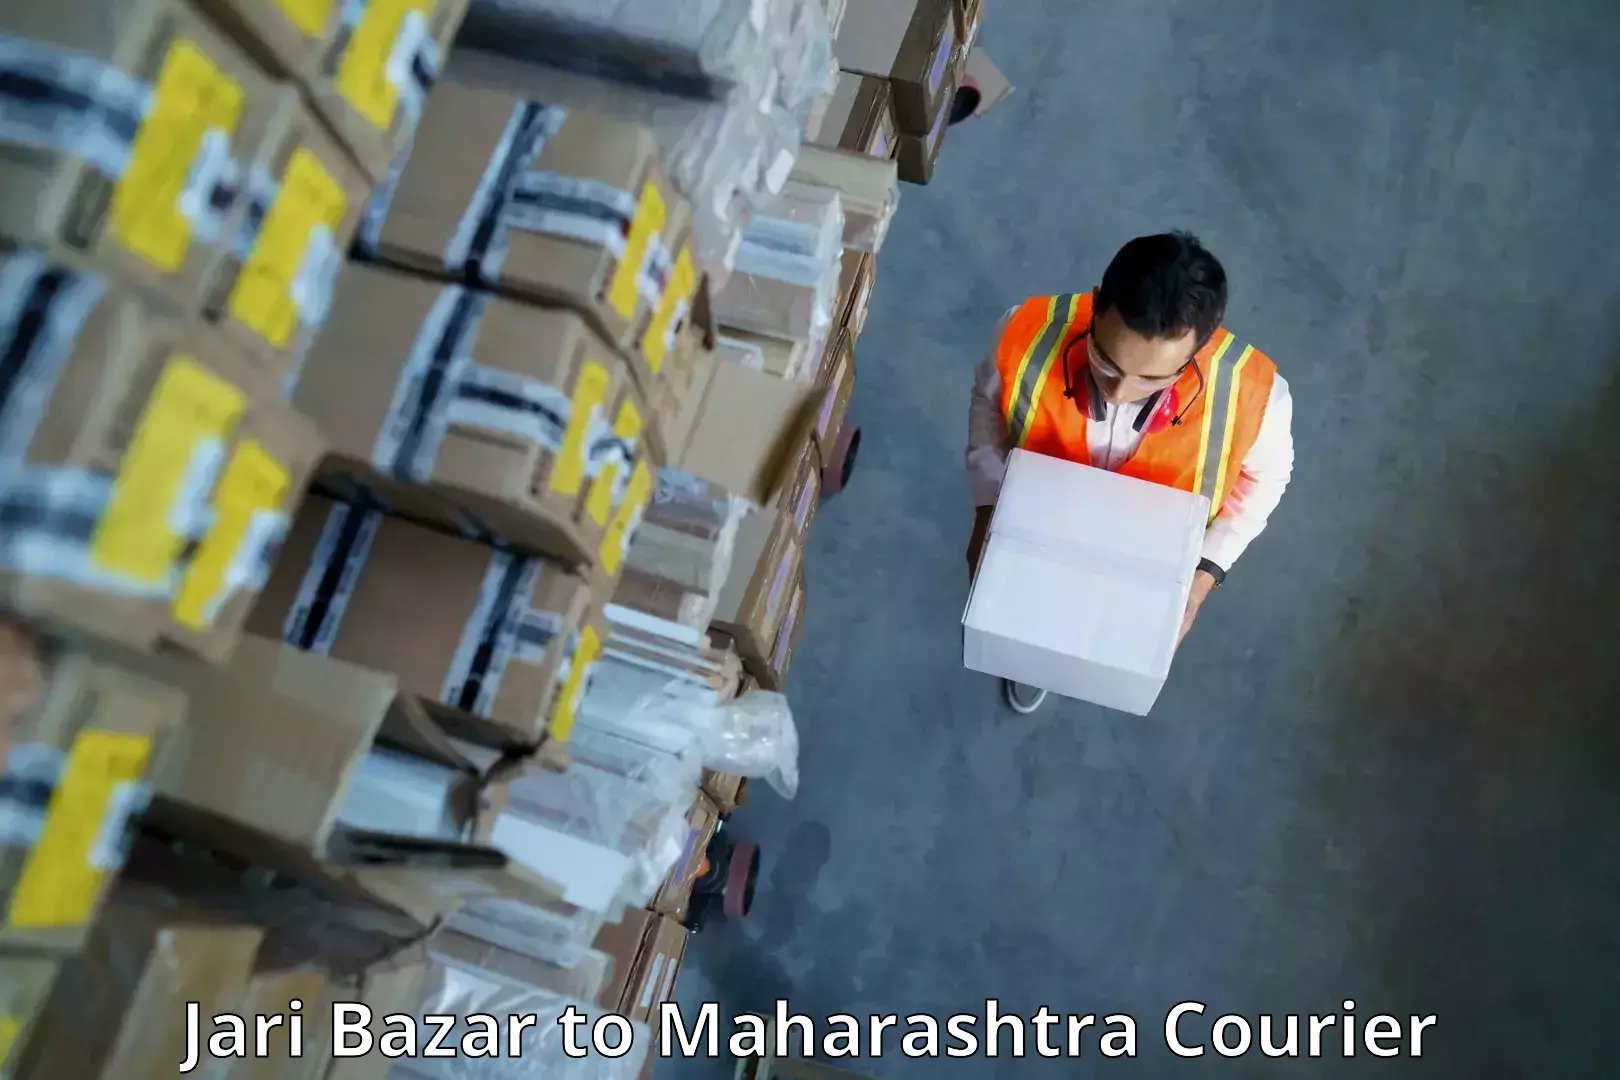 High-speed parcel service Jari Bazar to Sindhudurg